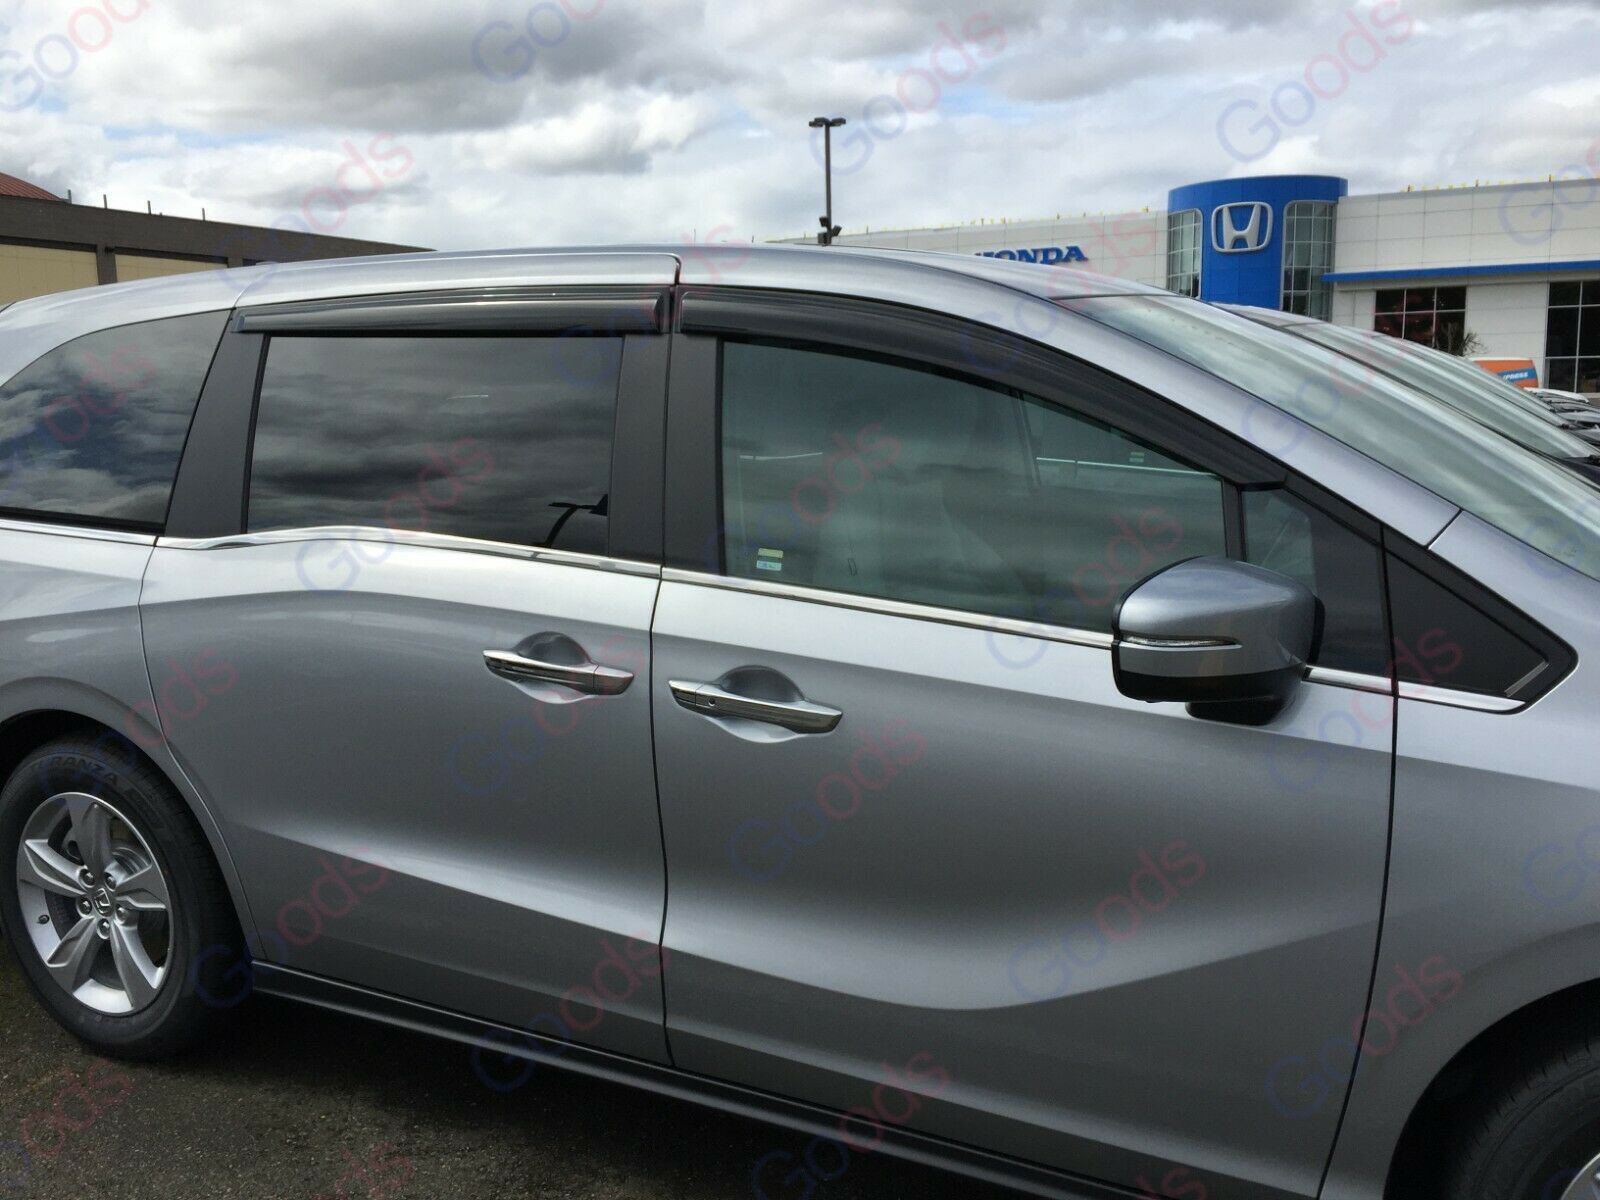 Ajuste 2015-2019 Subaru Outback OE estilo ventilación ventana viseras lluvia sol viento guardias deflectores de sombra